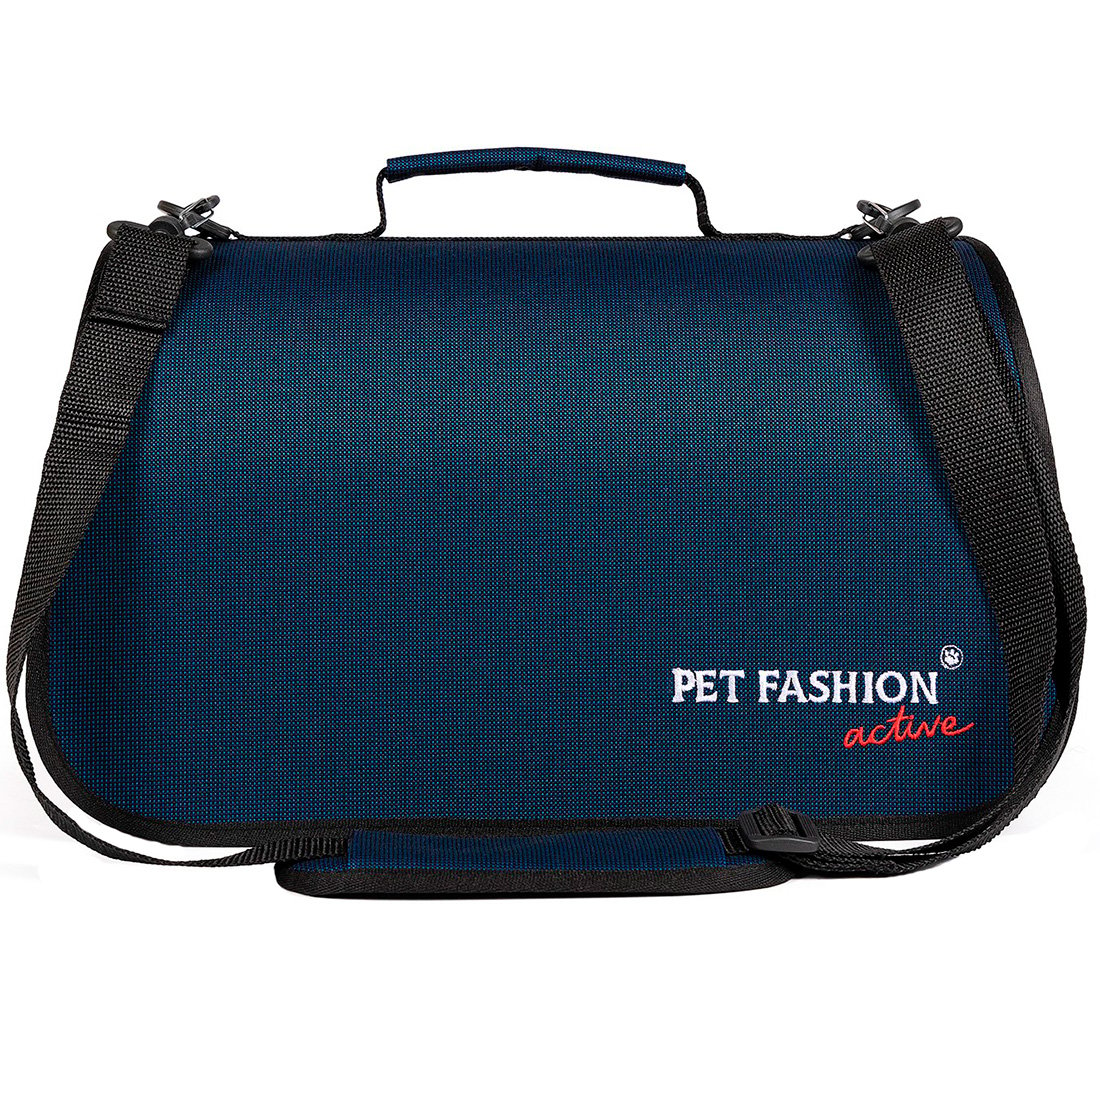 Сумка-переноска Pet Fashion Vesta, 38x22x22 см, синяя - фото 1